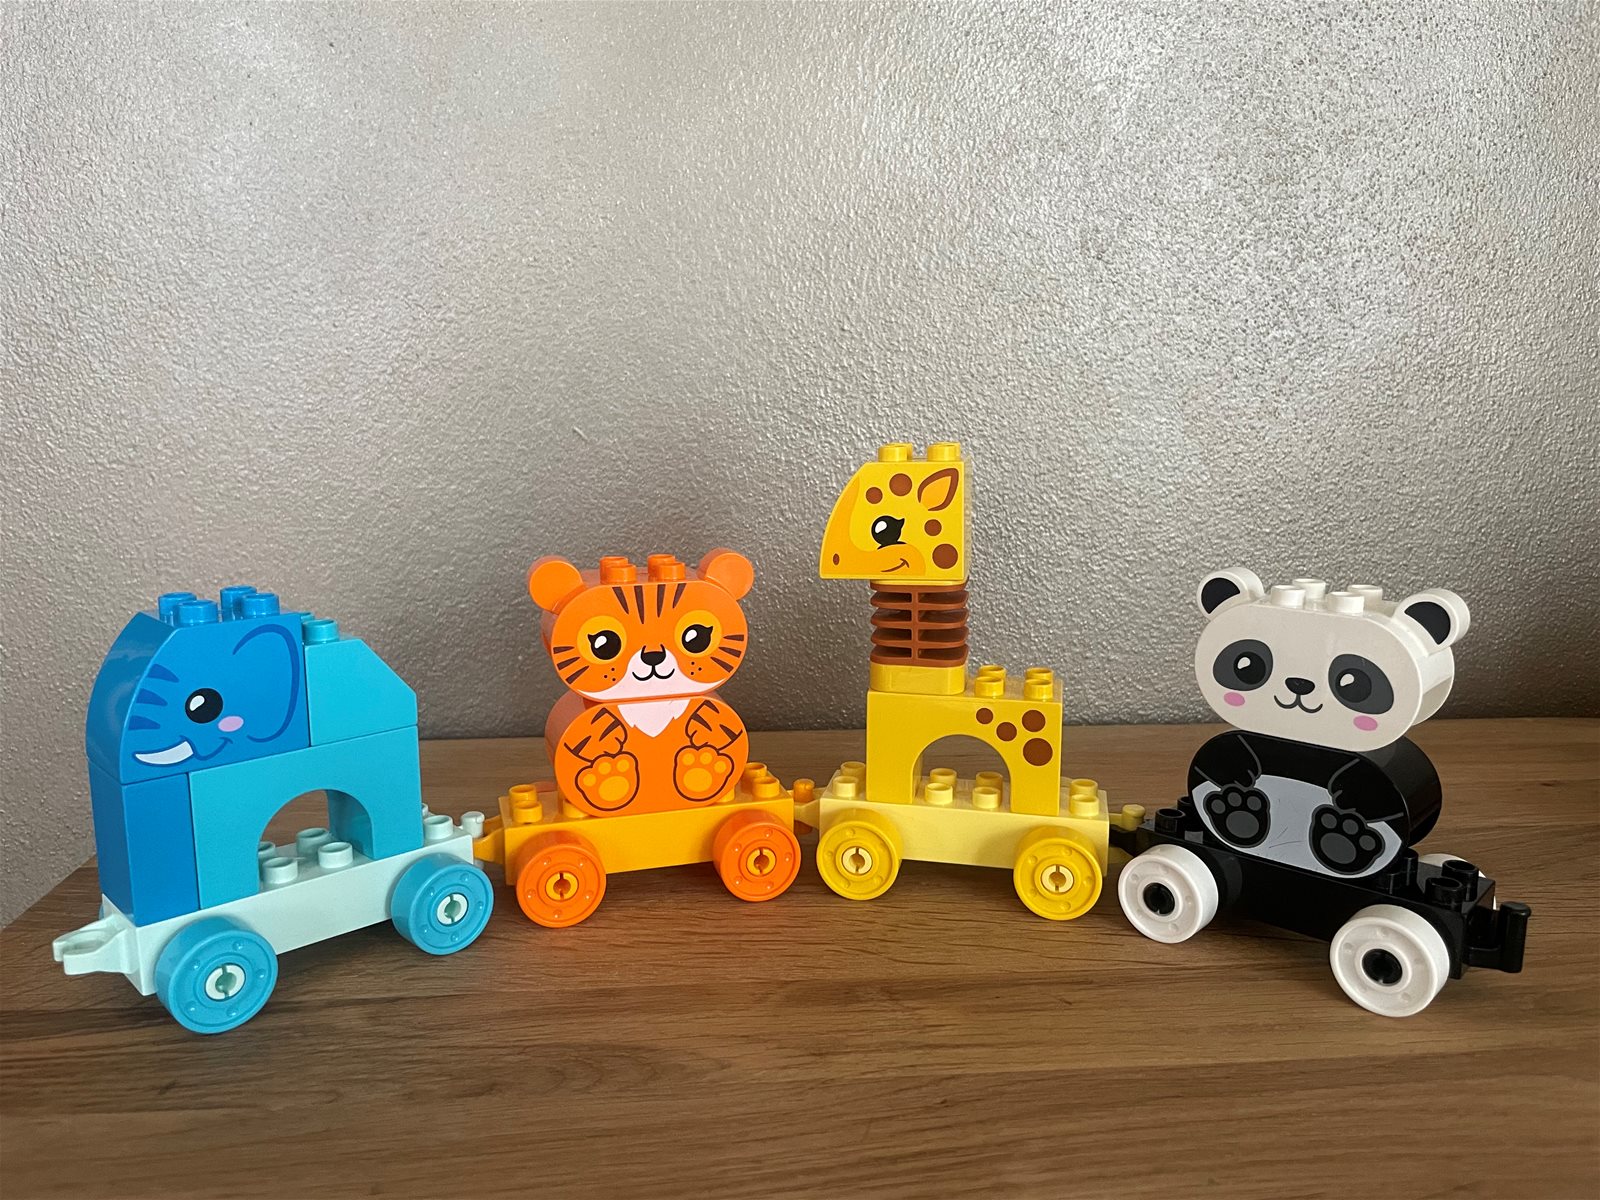 LEGO DUPLO My First 10955 Animal Train - LEGO Set